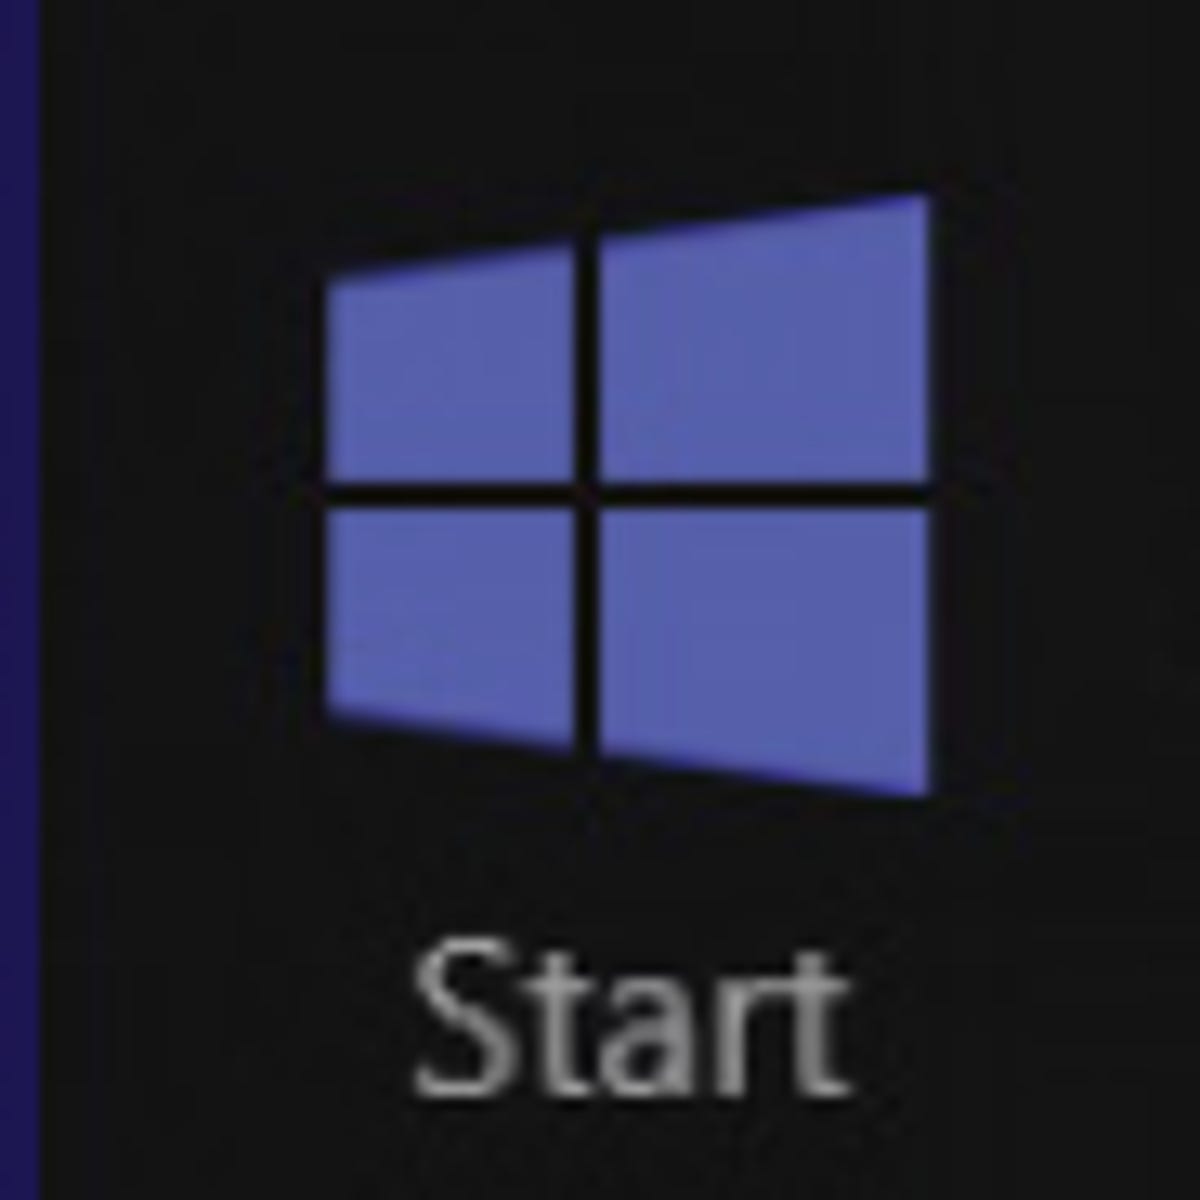 Windows 8 start